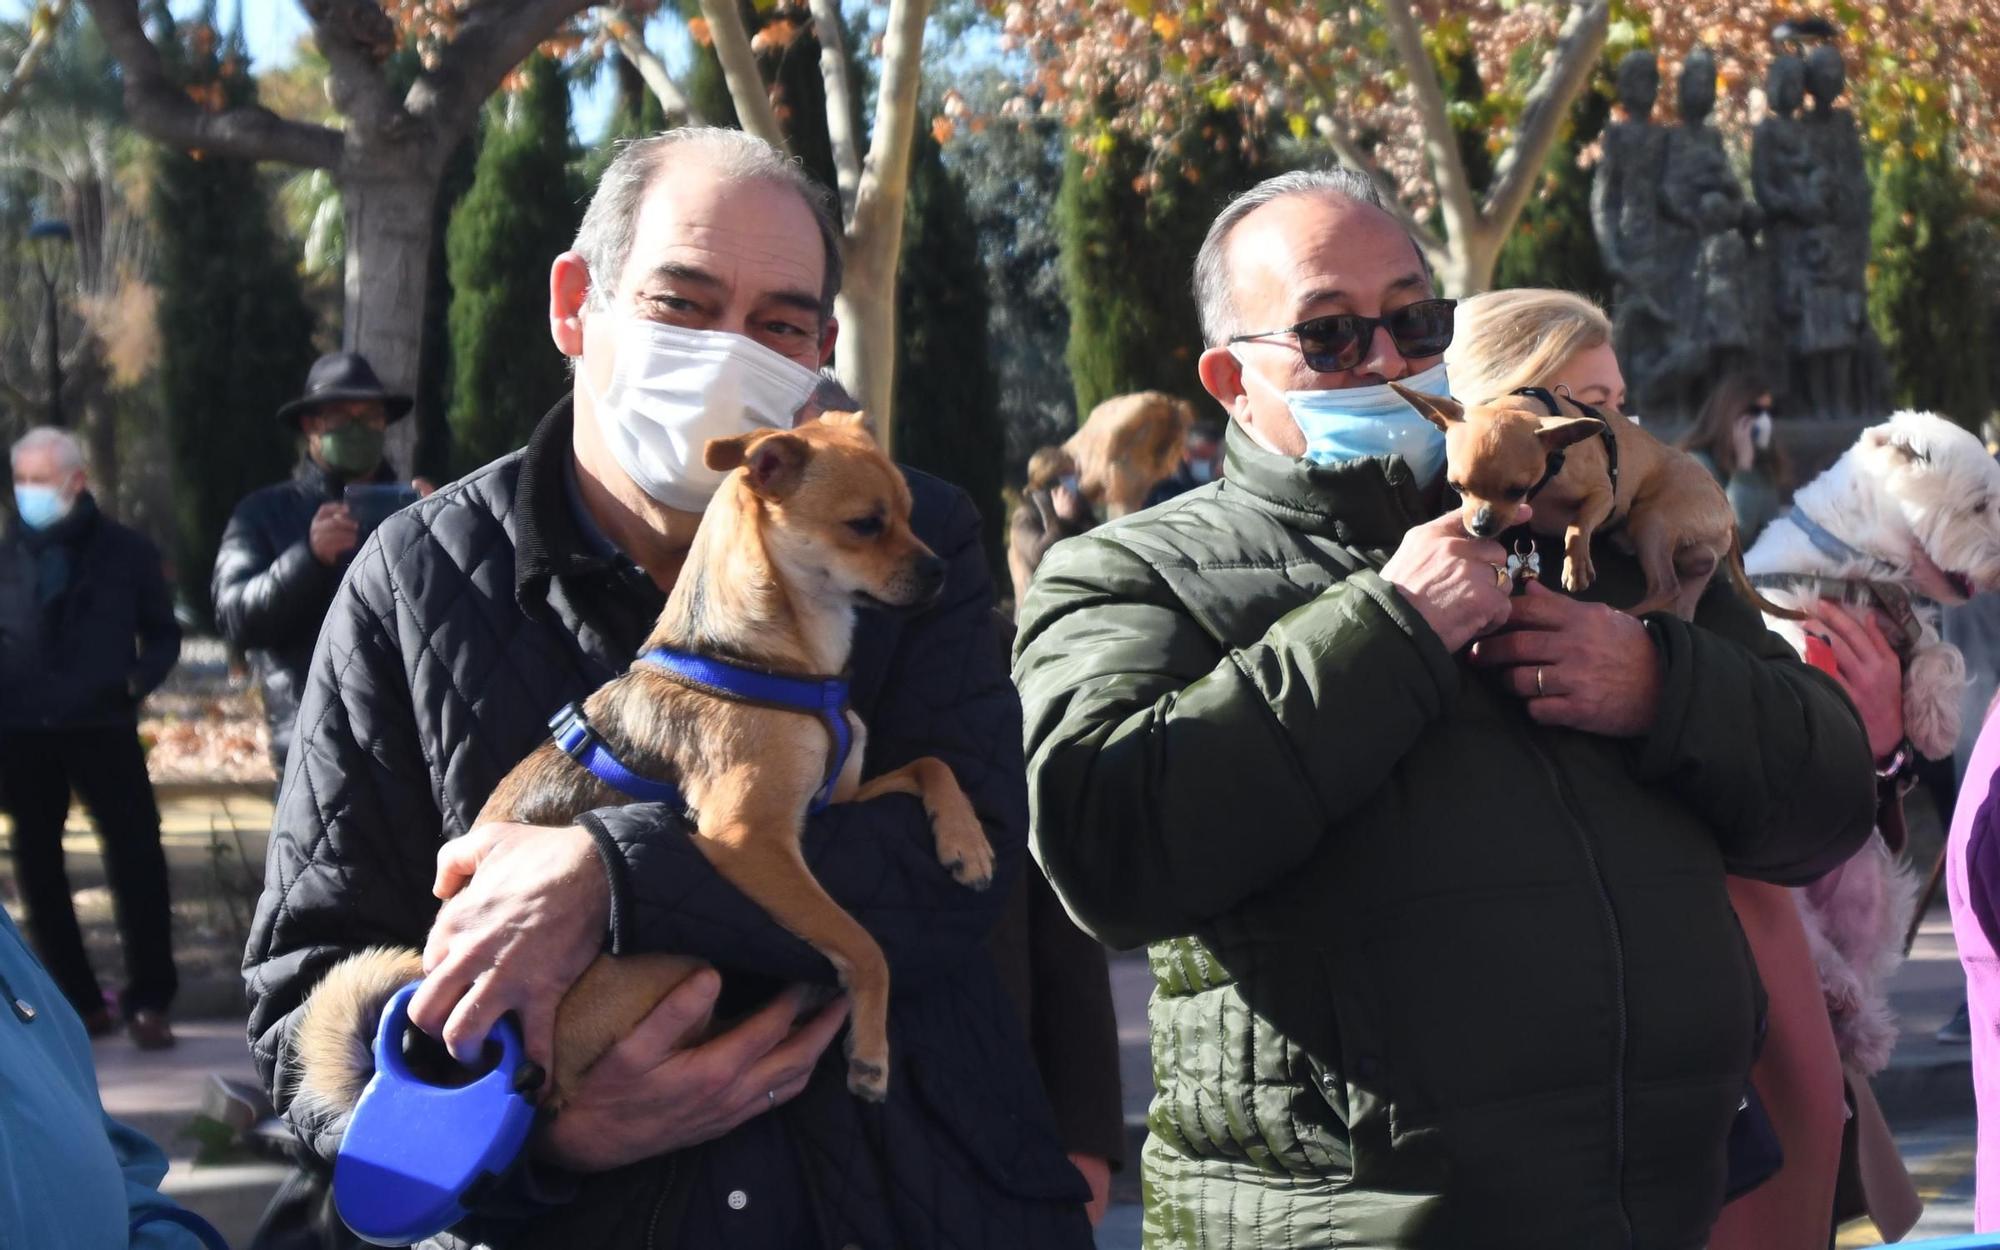 Las mascotas reciben su bendición por San Antón en Murcia (II)